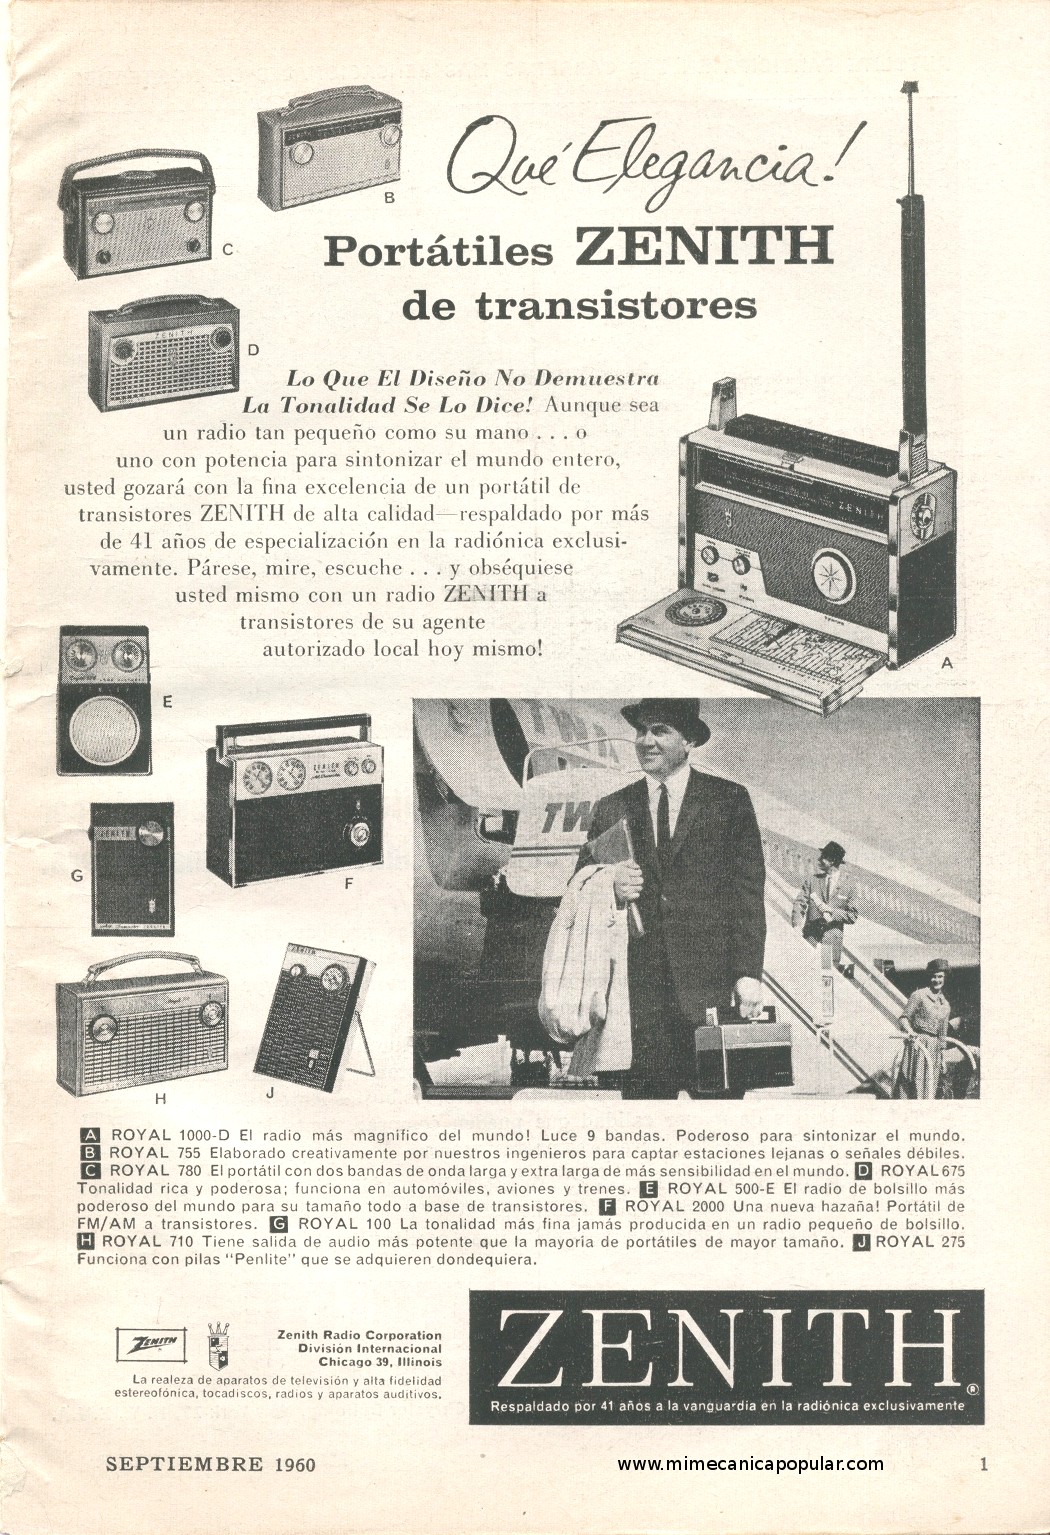 Publicidad - Radios Zenith de Transistores - Septiembre 1960